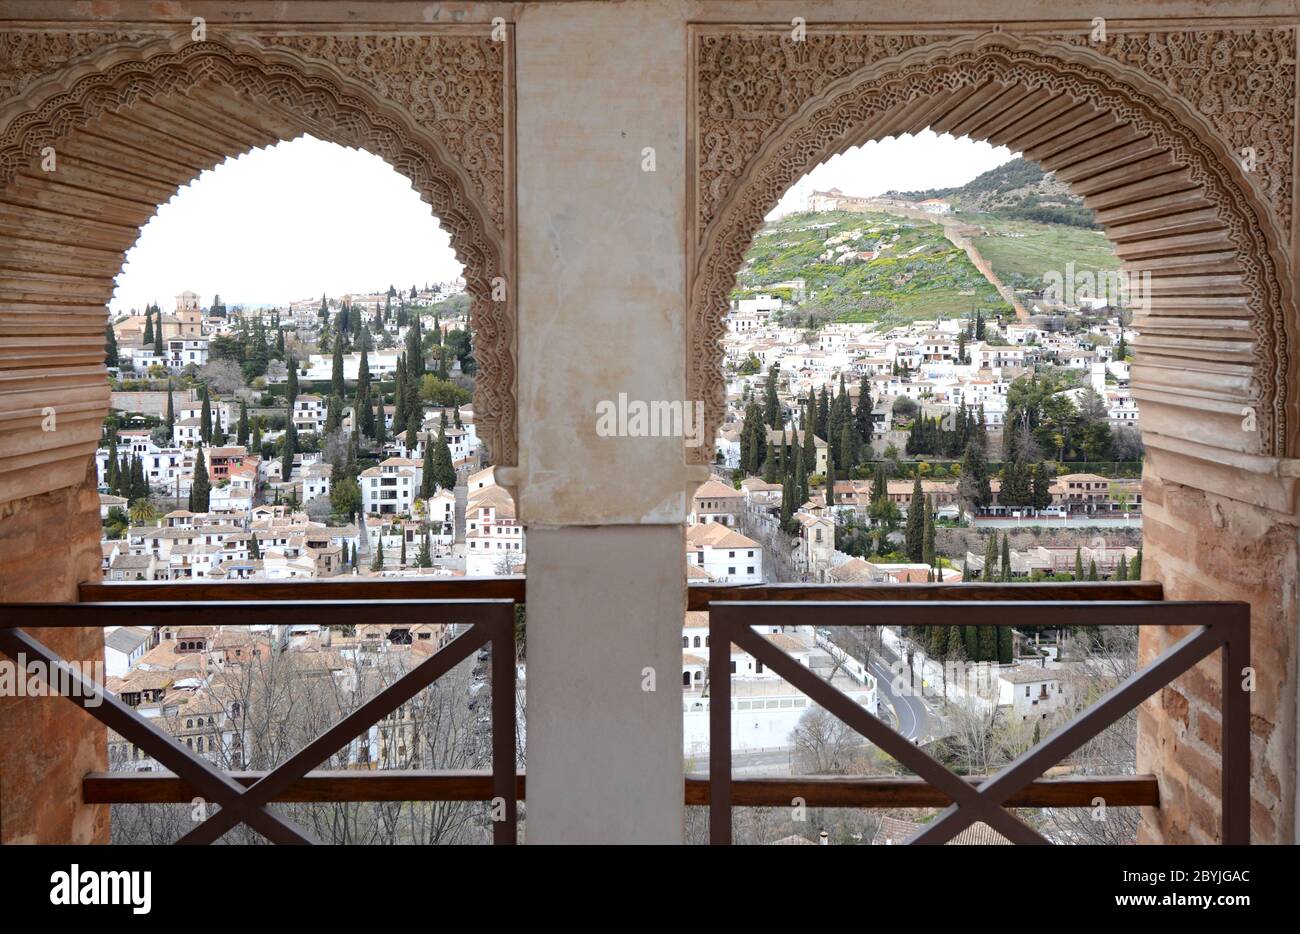 Spain, Andalusia / Granada - April 2, 2018: The Alhambra complex in Granada in Andalusia. Moorish architecture of Arabic origin. Stock Photo